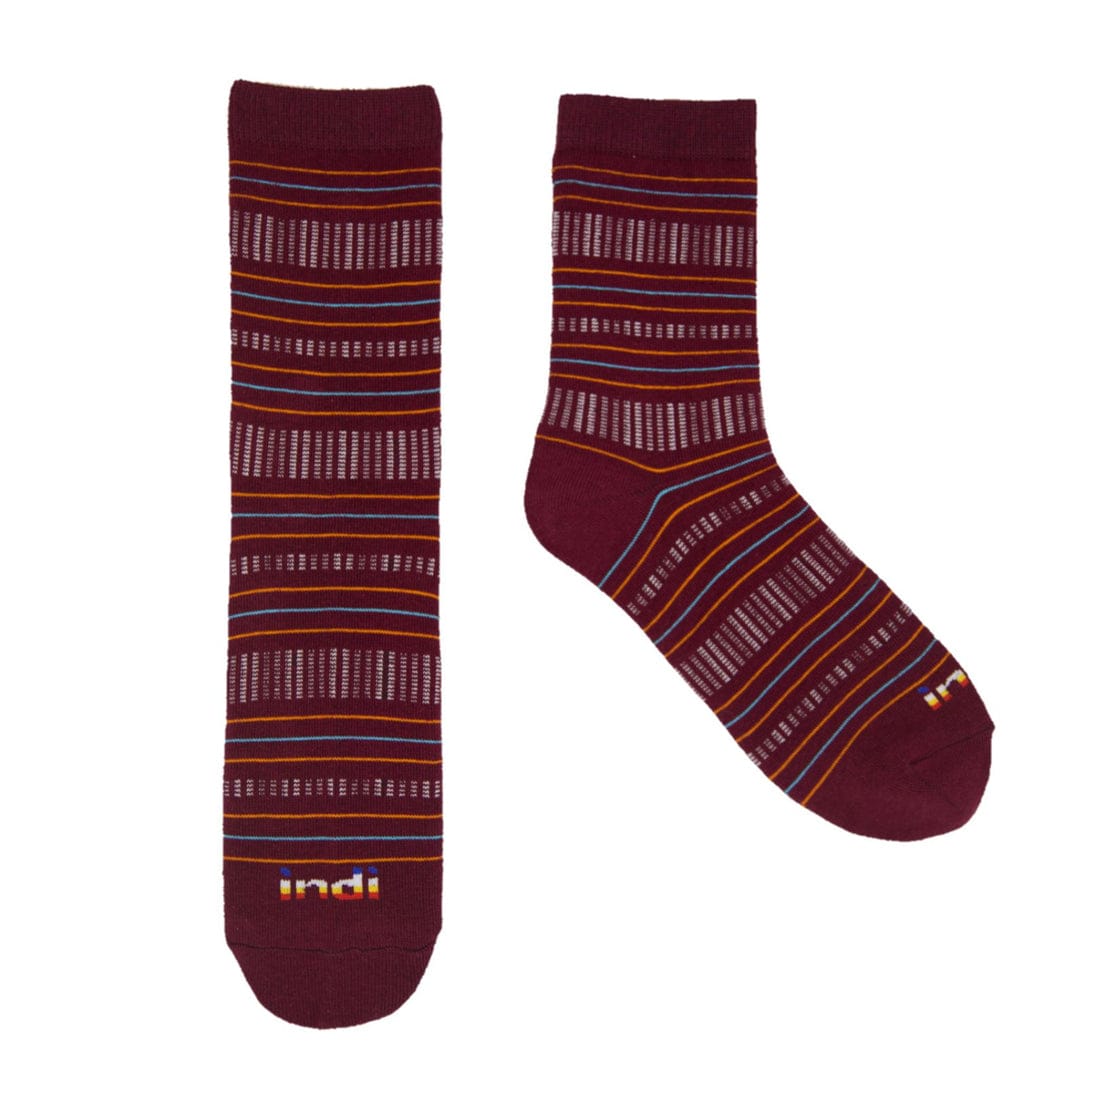 Kantarines (Maroon)- INDI Heritage Socks (Adult)